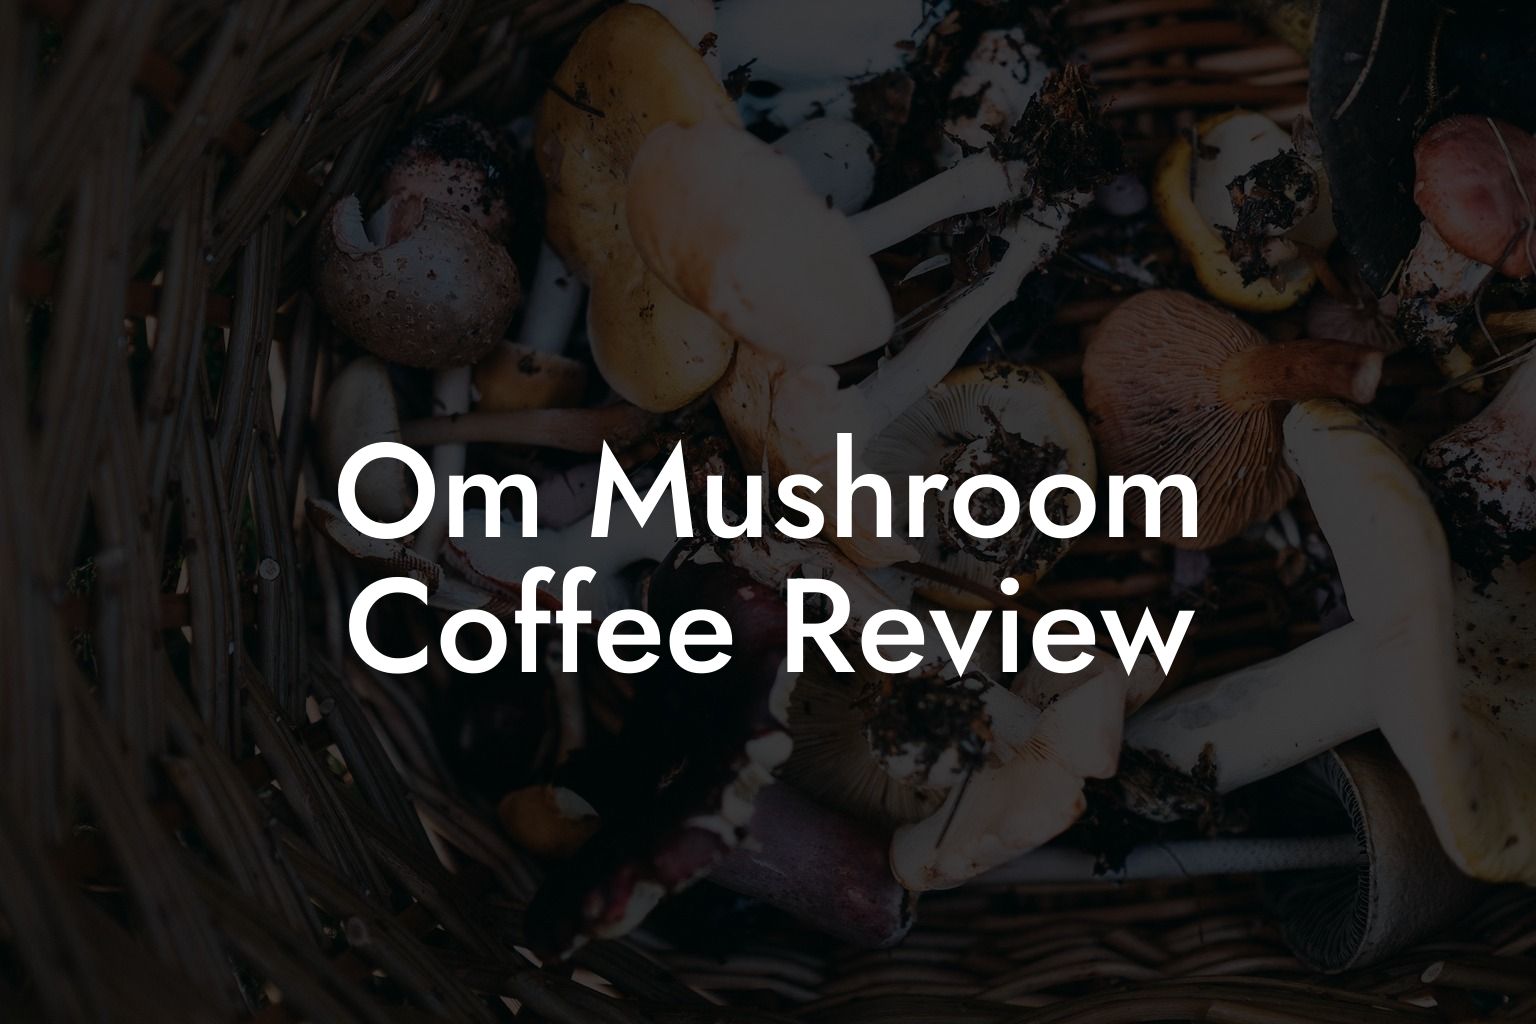 Om Mushroom Coffee Review